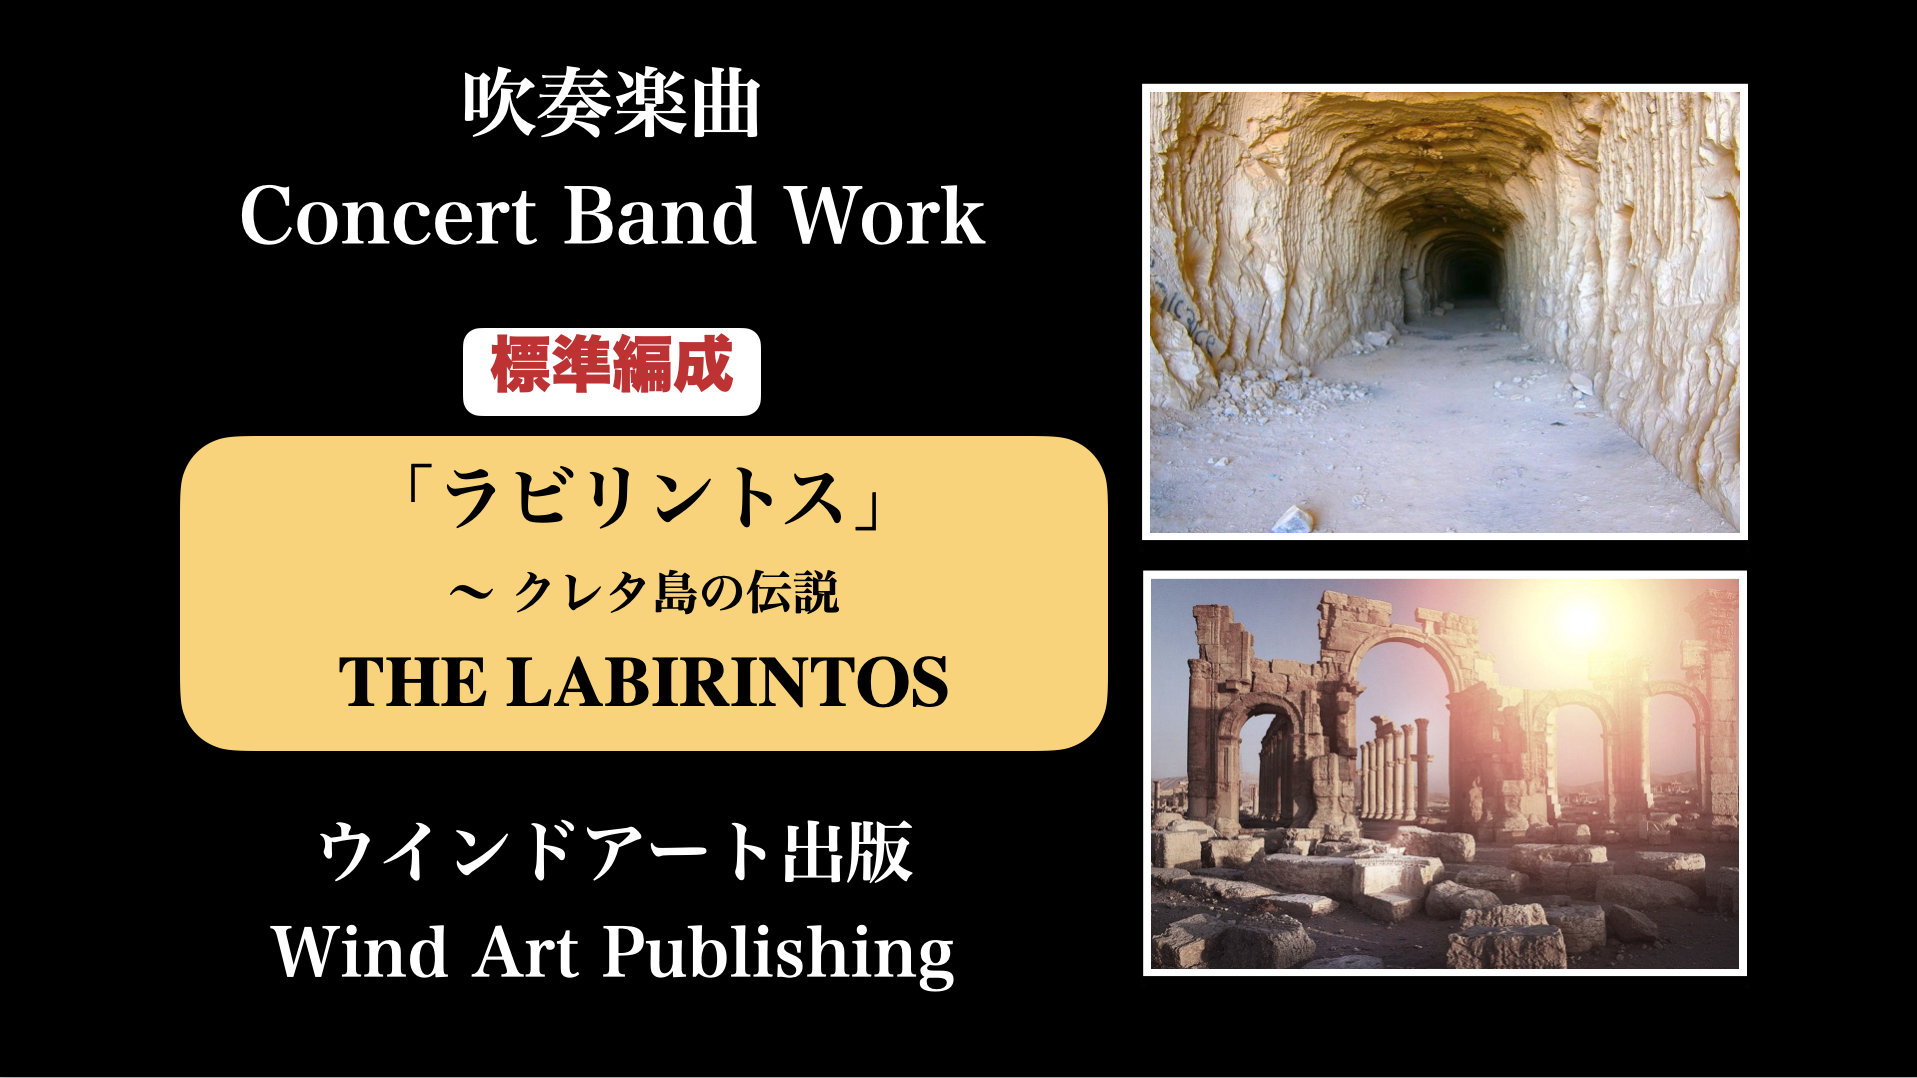 ラビリントス クレタ島の伝説 The Labirintos The Myth Of Crete 作曲家 八木澤教司 公式hp Satoshi Yagisawa